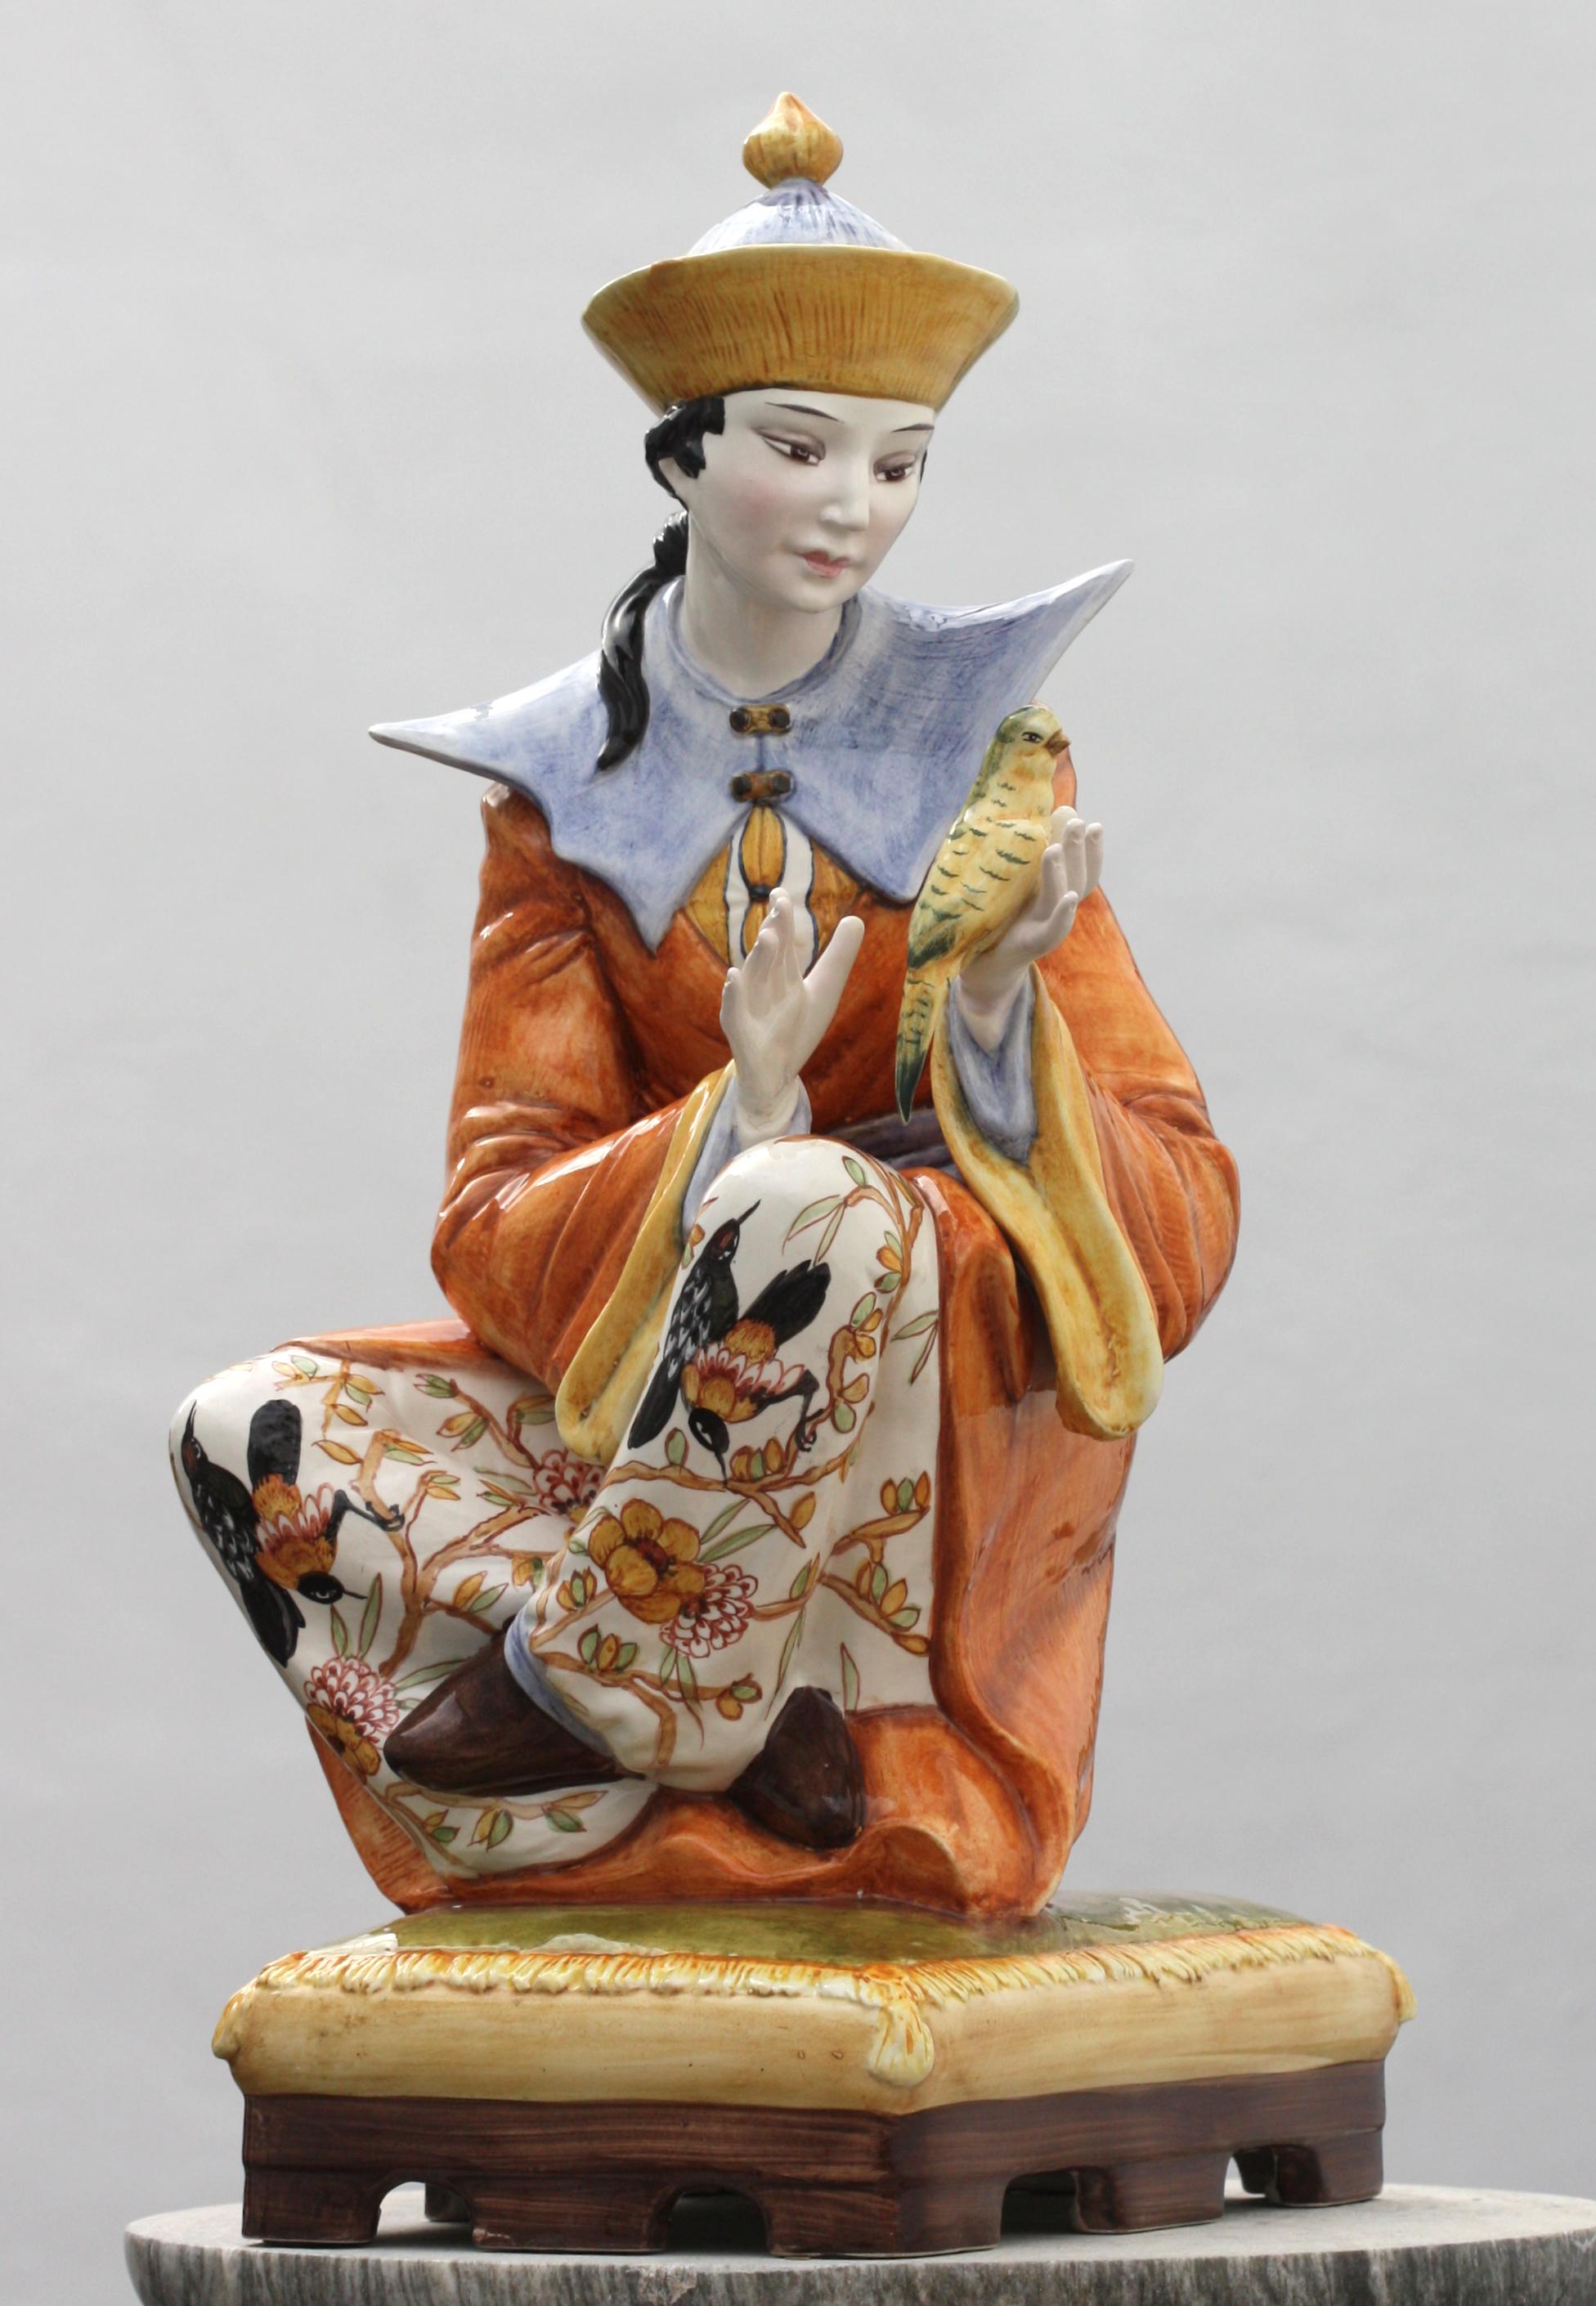 Majolique italienne mandarine
Peinture colorée représentant un jeune mandarin assis sur un coussin, anciennement montée comme lampe. Hauteur 26 po, largeur 12 po, profondeur 14 po.